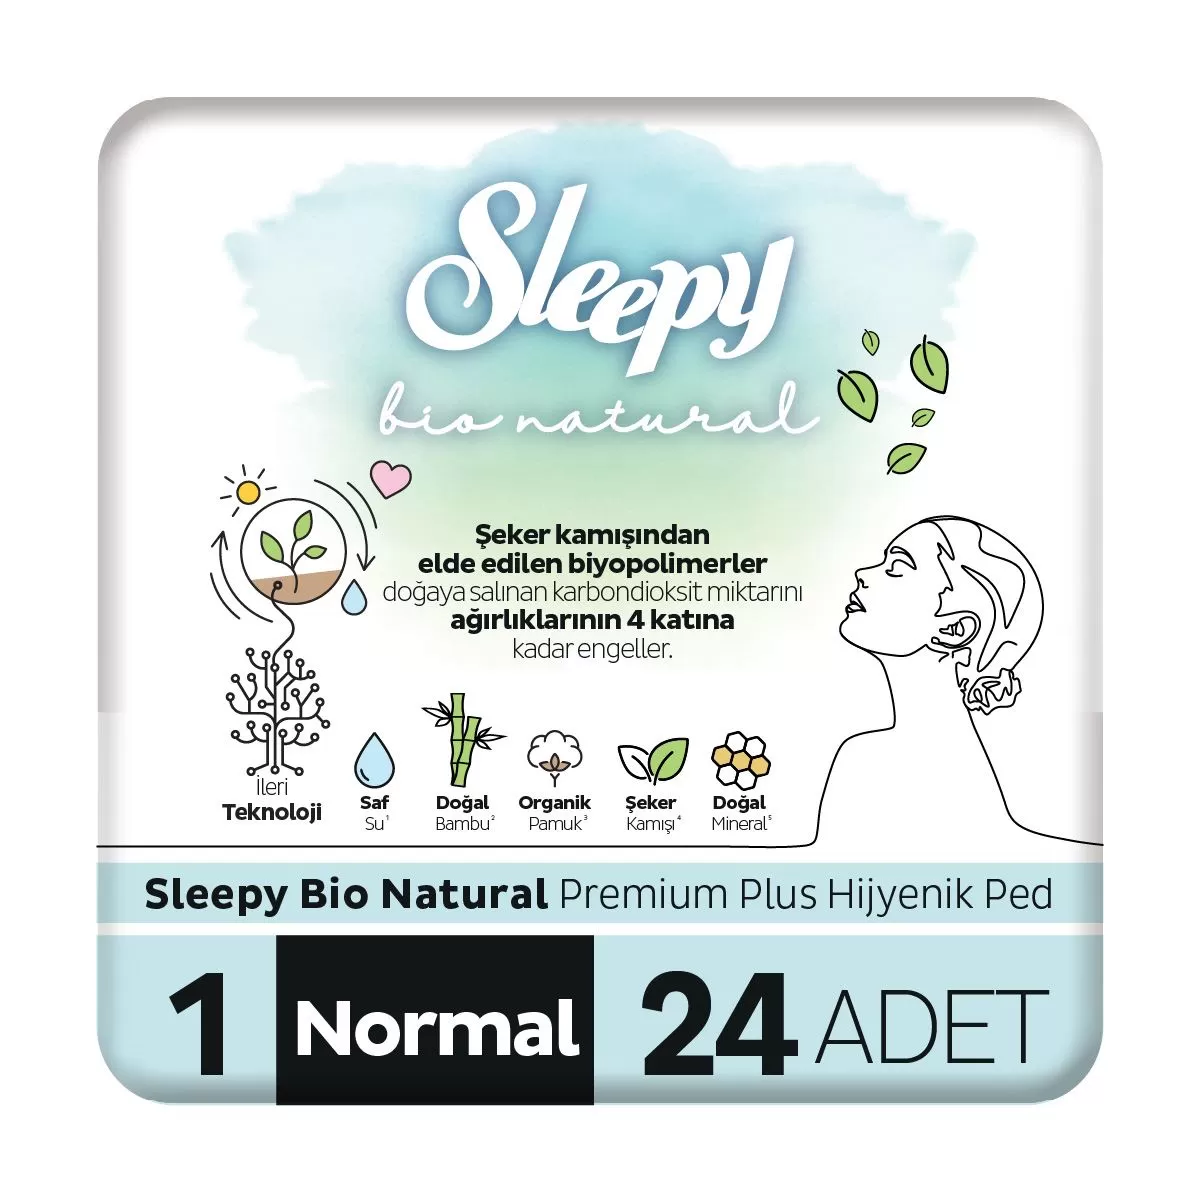 Sleepy Bio Natural Premium Plus Hijyenik Ped Normal 24x3 72 Adet Ped